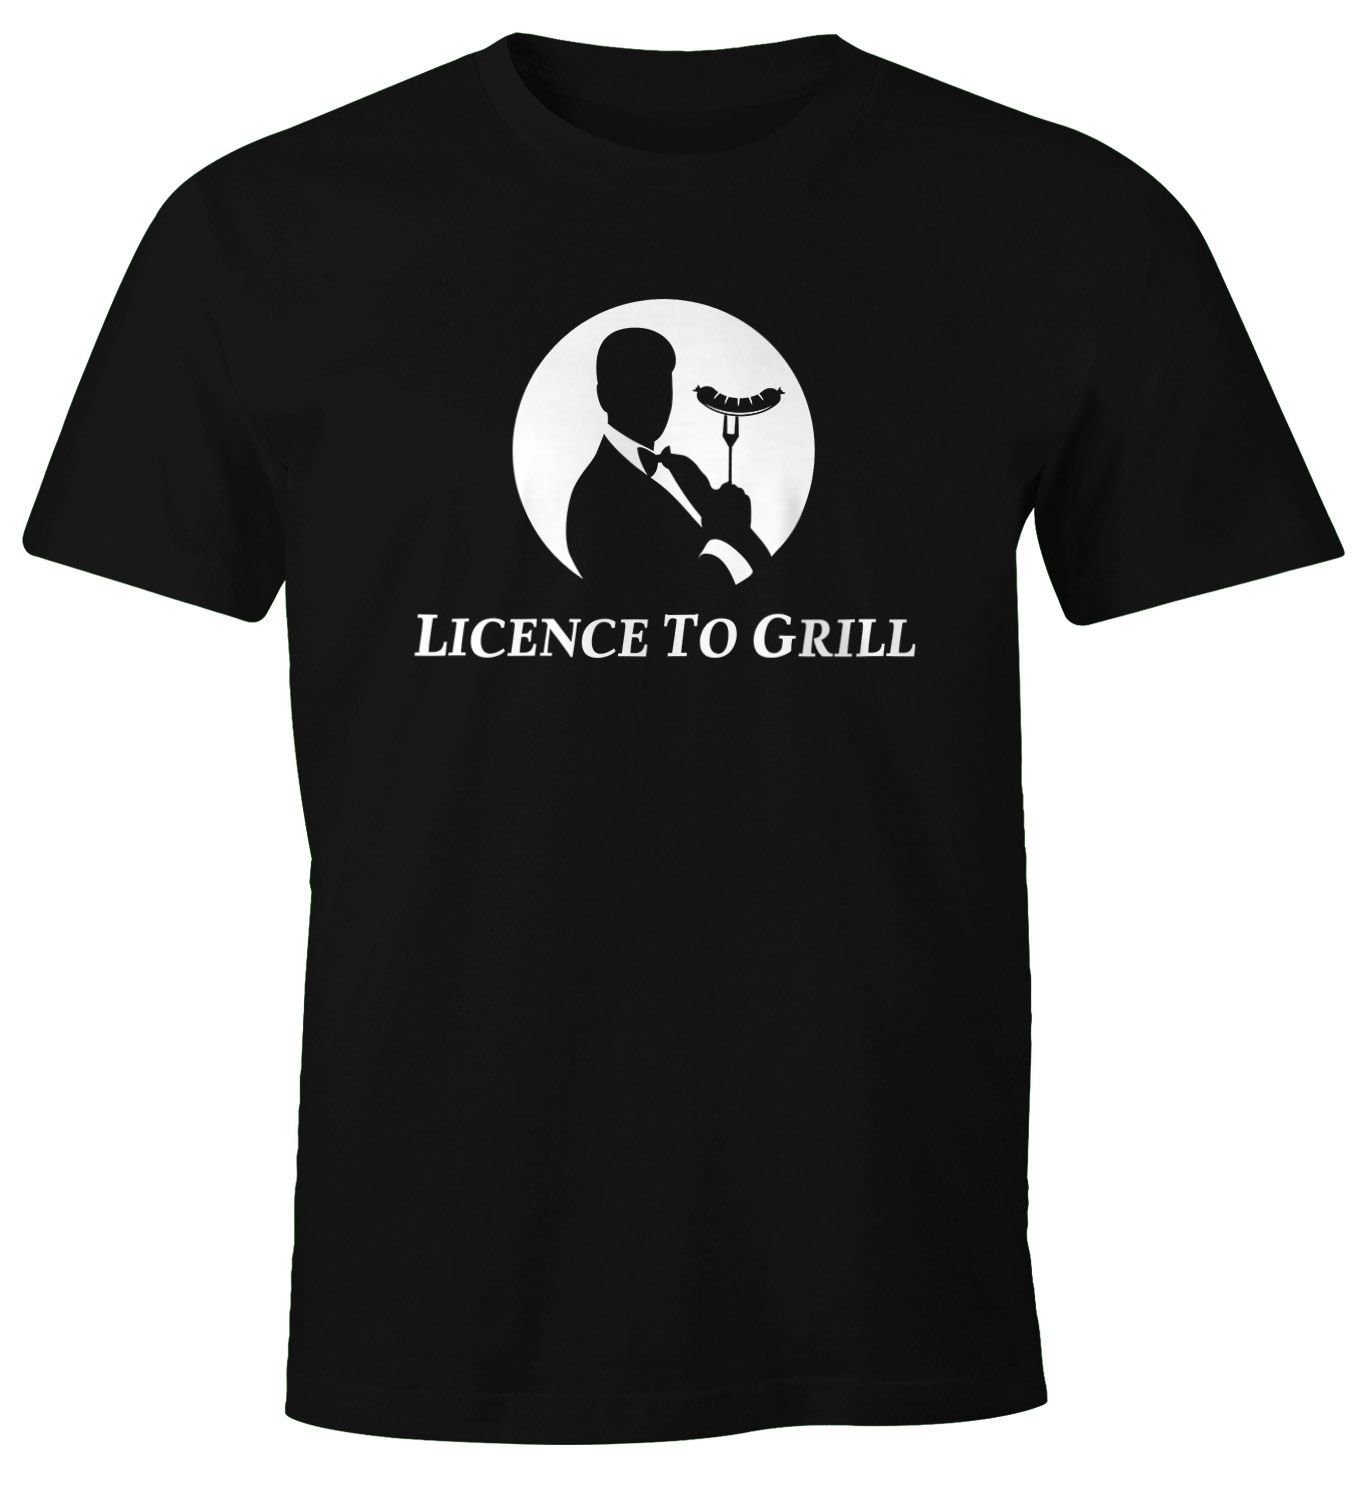 Herren MoonWorks Print-Shirt Grillen Licence to Grill Parodie lustig T-Shirt mit Moonworks® Print Fun-Shirt